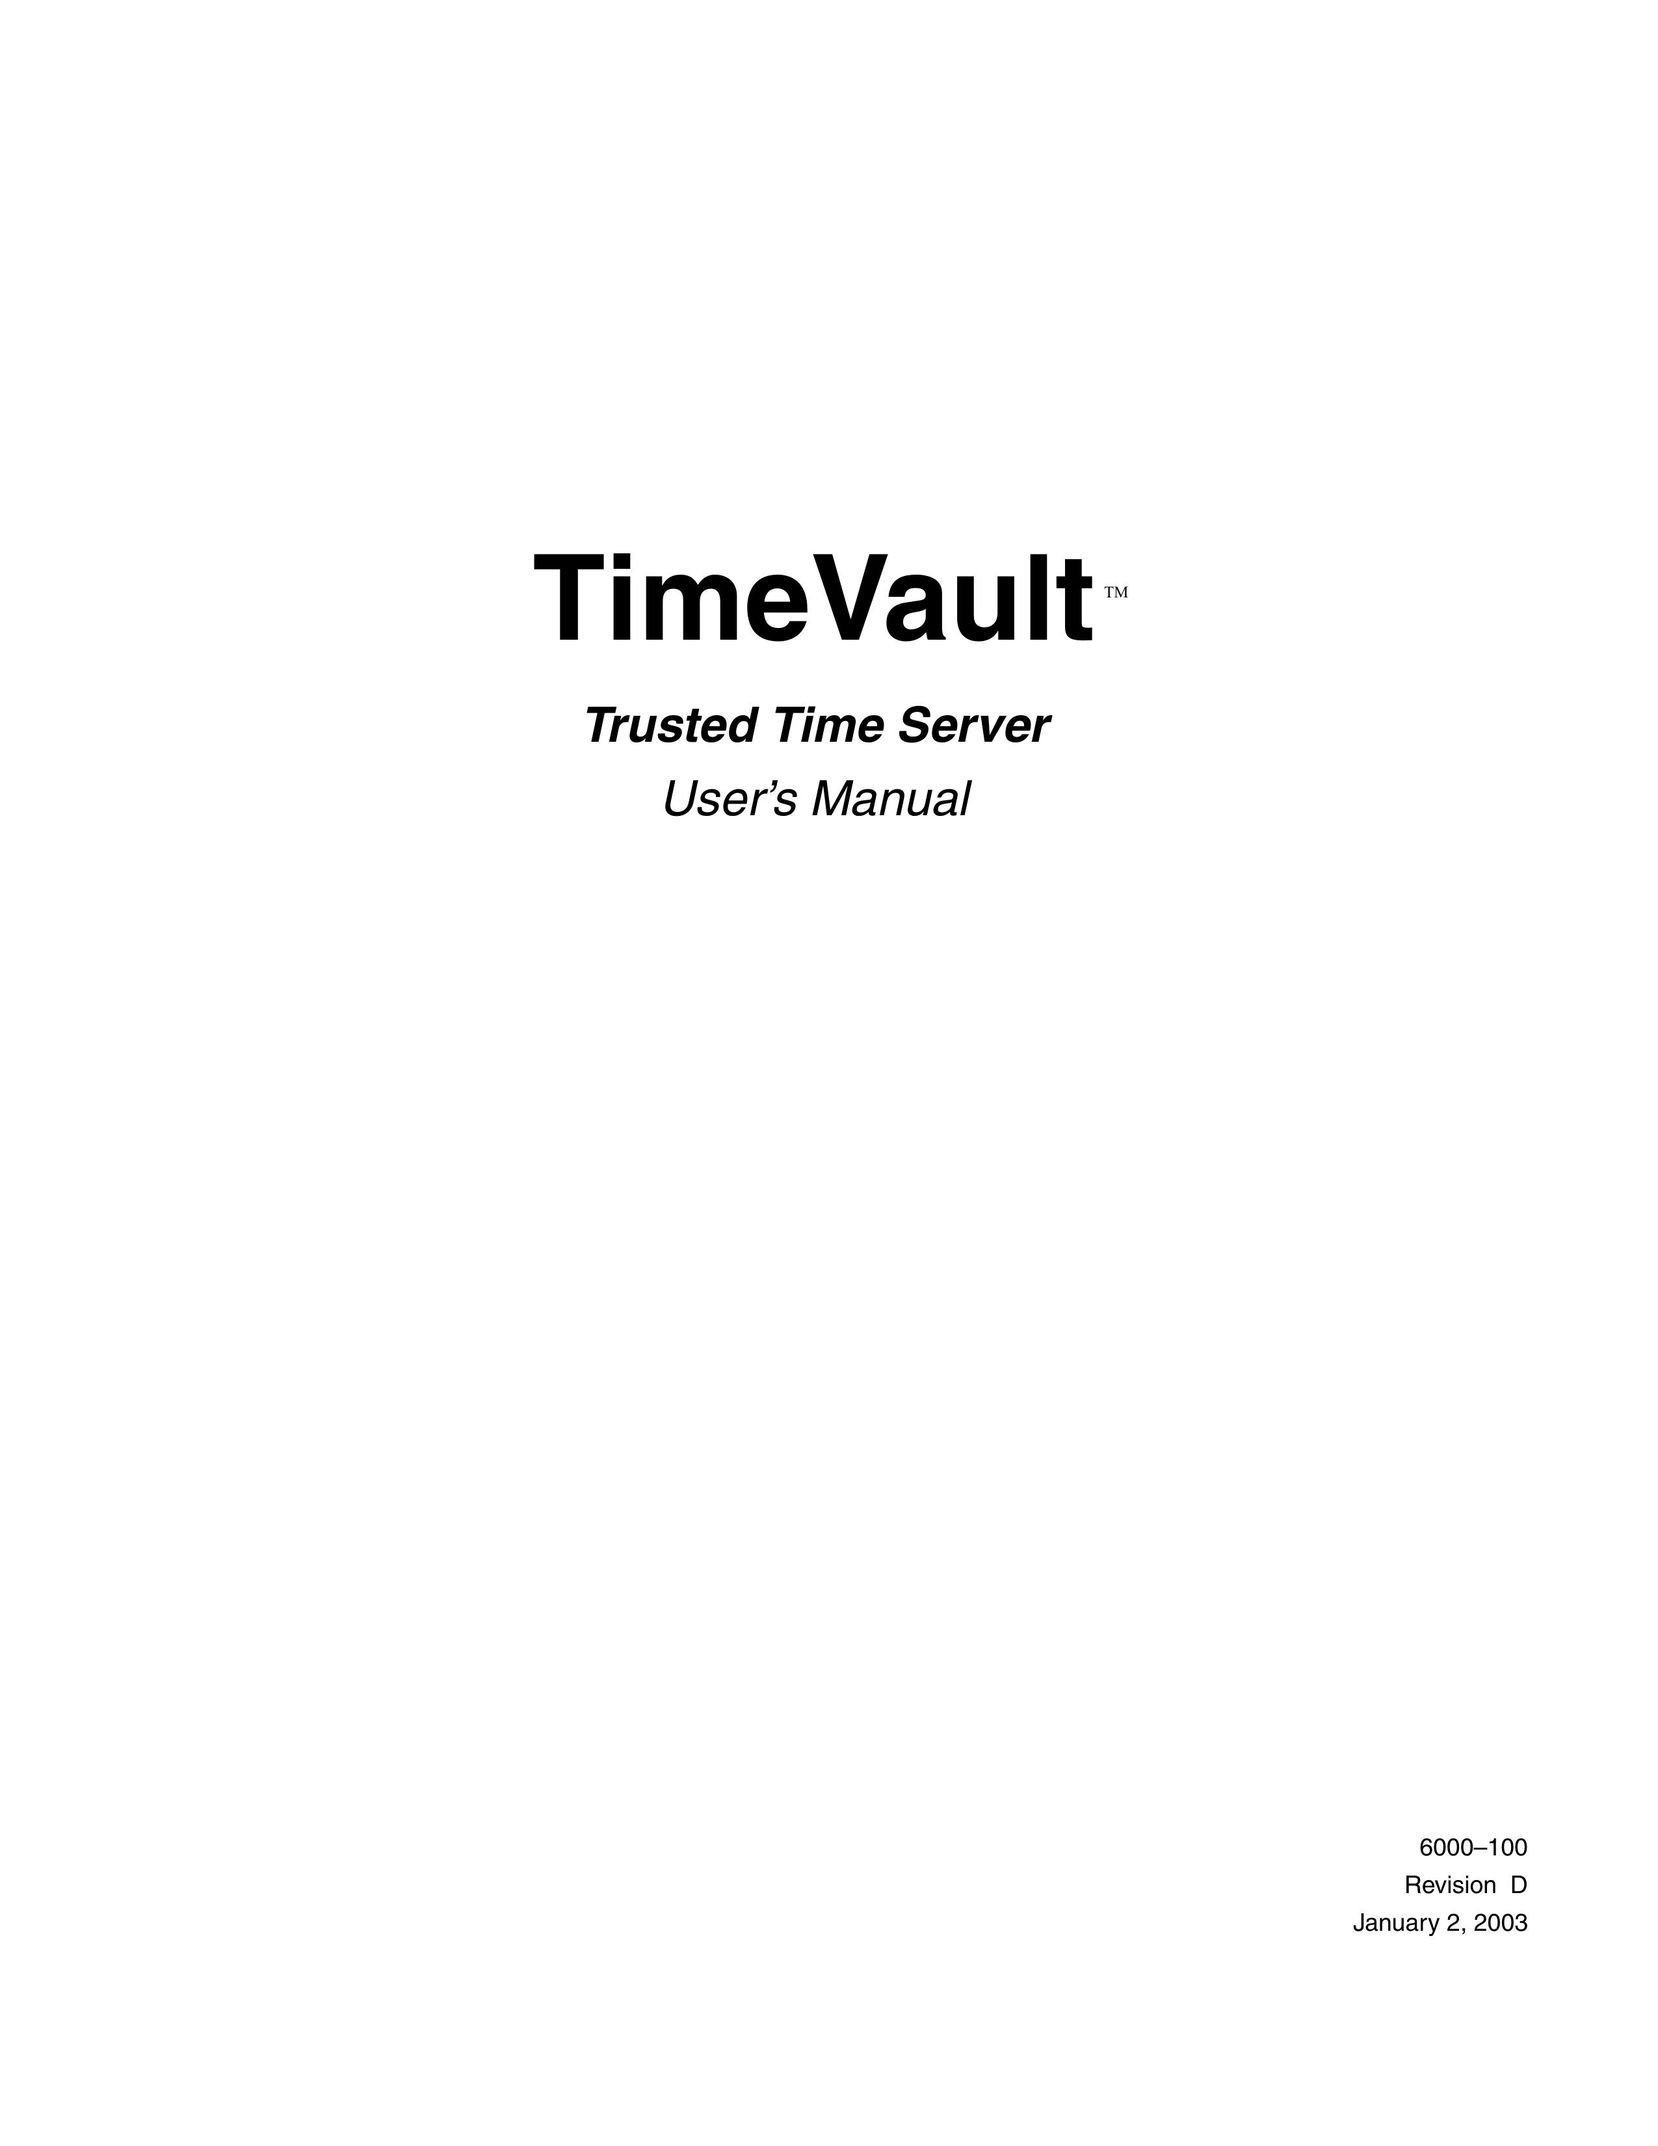 Symmetricom Time Server Network Card User Manual